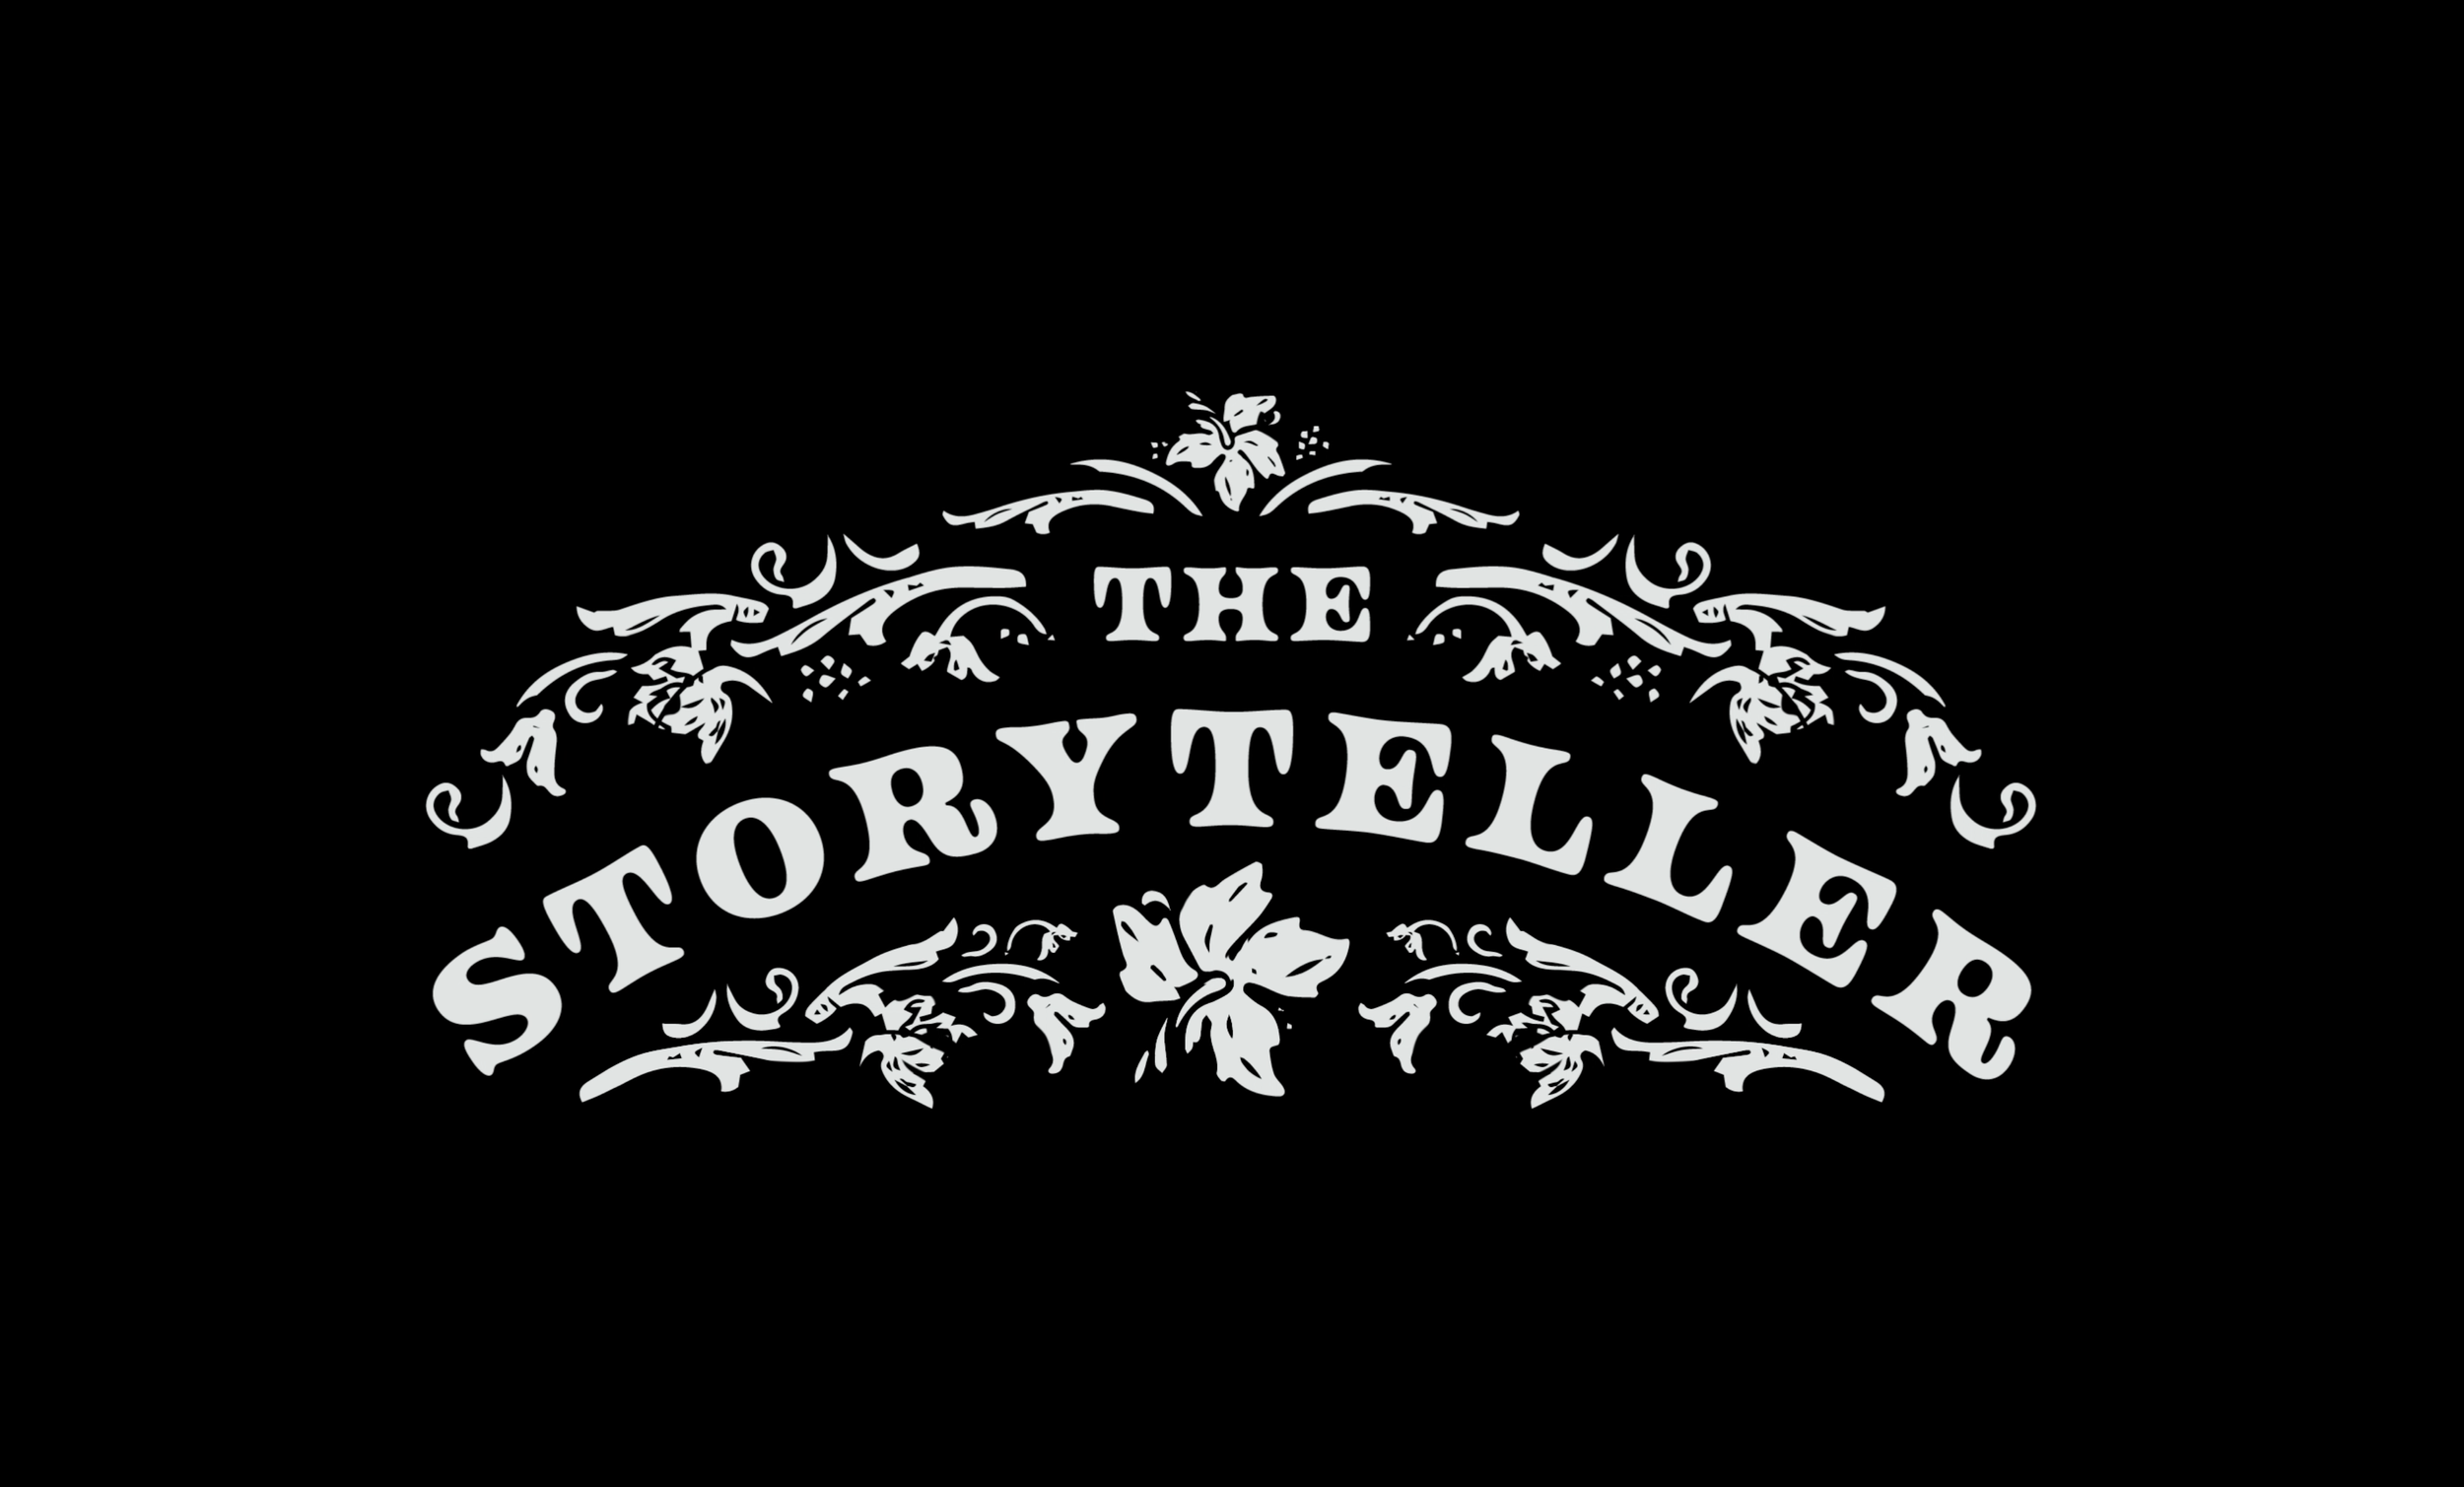 The Storyteller, Complete Branding